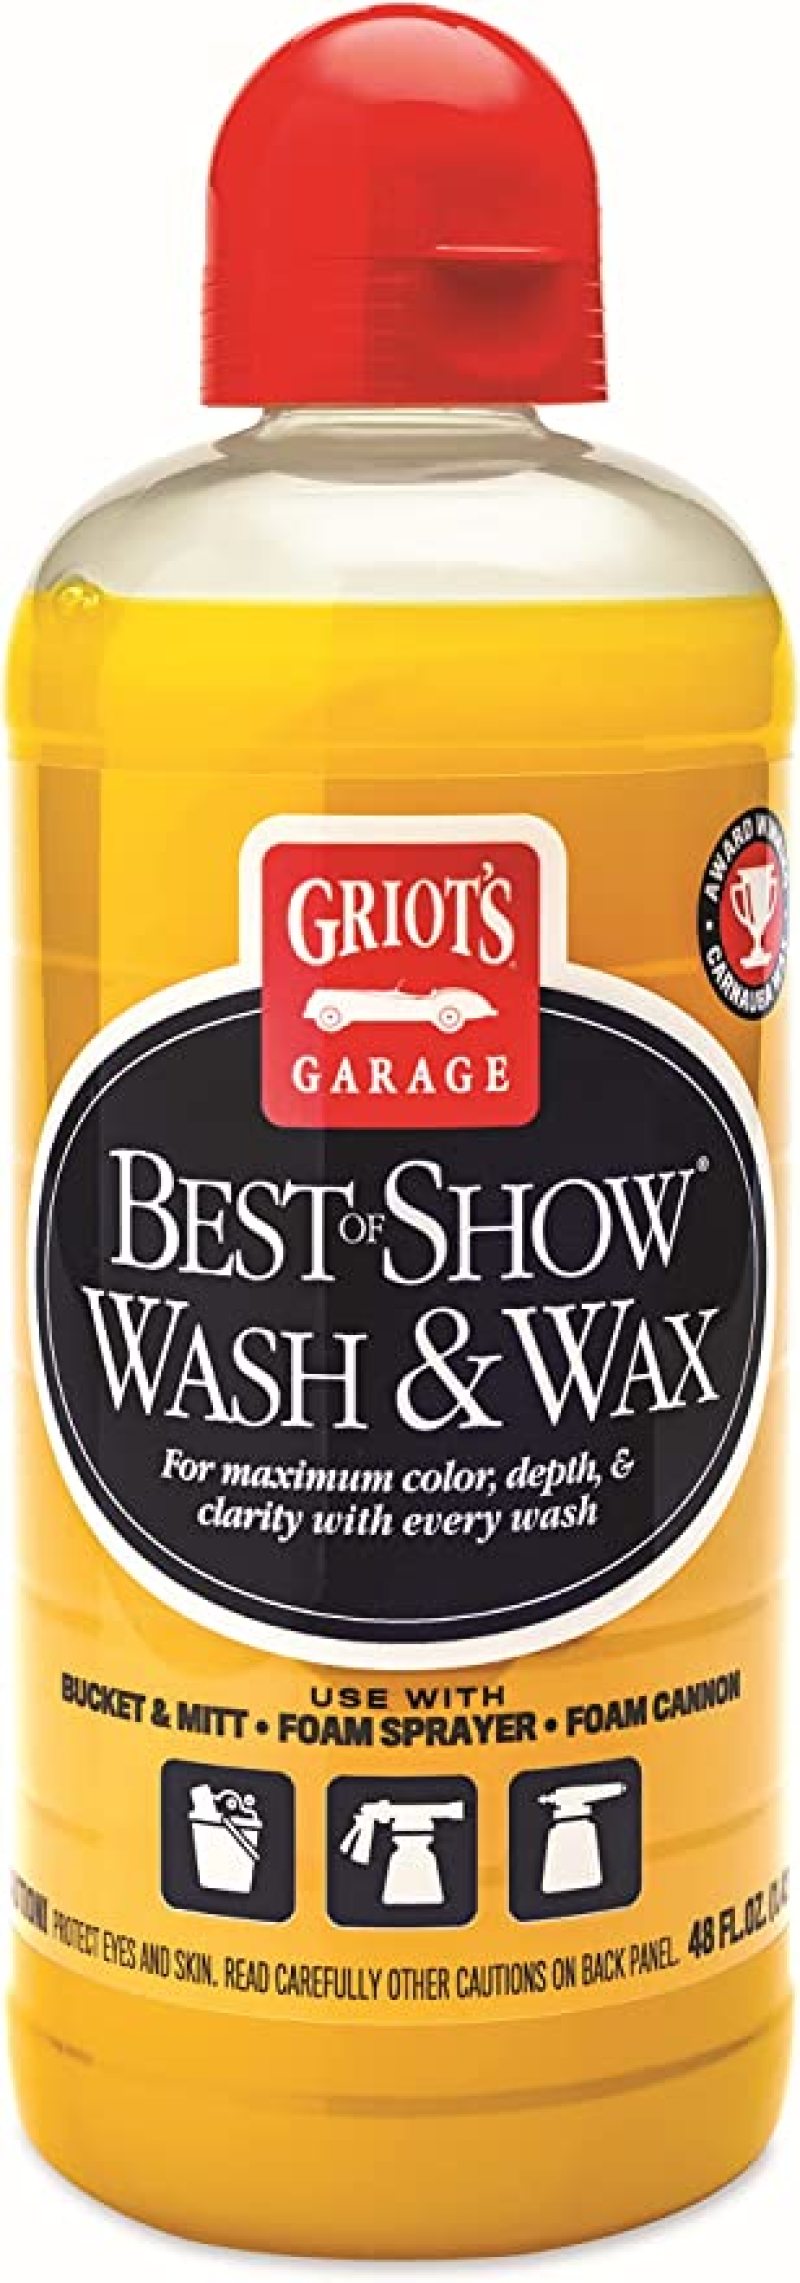 GRIOT'S GARAGE Best of Show Spray Wax - 48oz - Case of 12